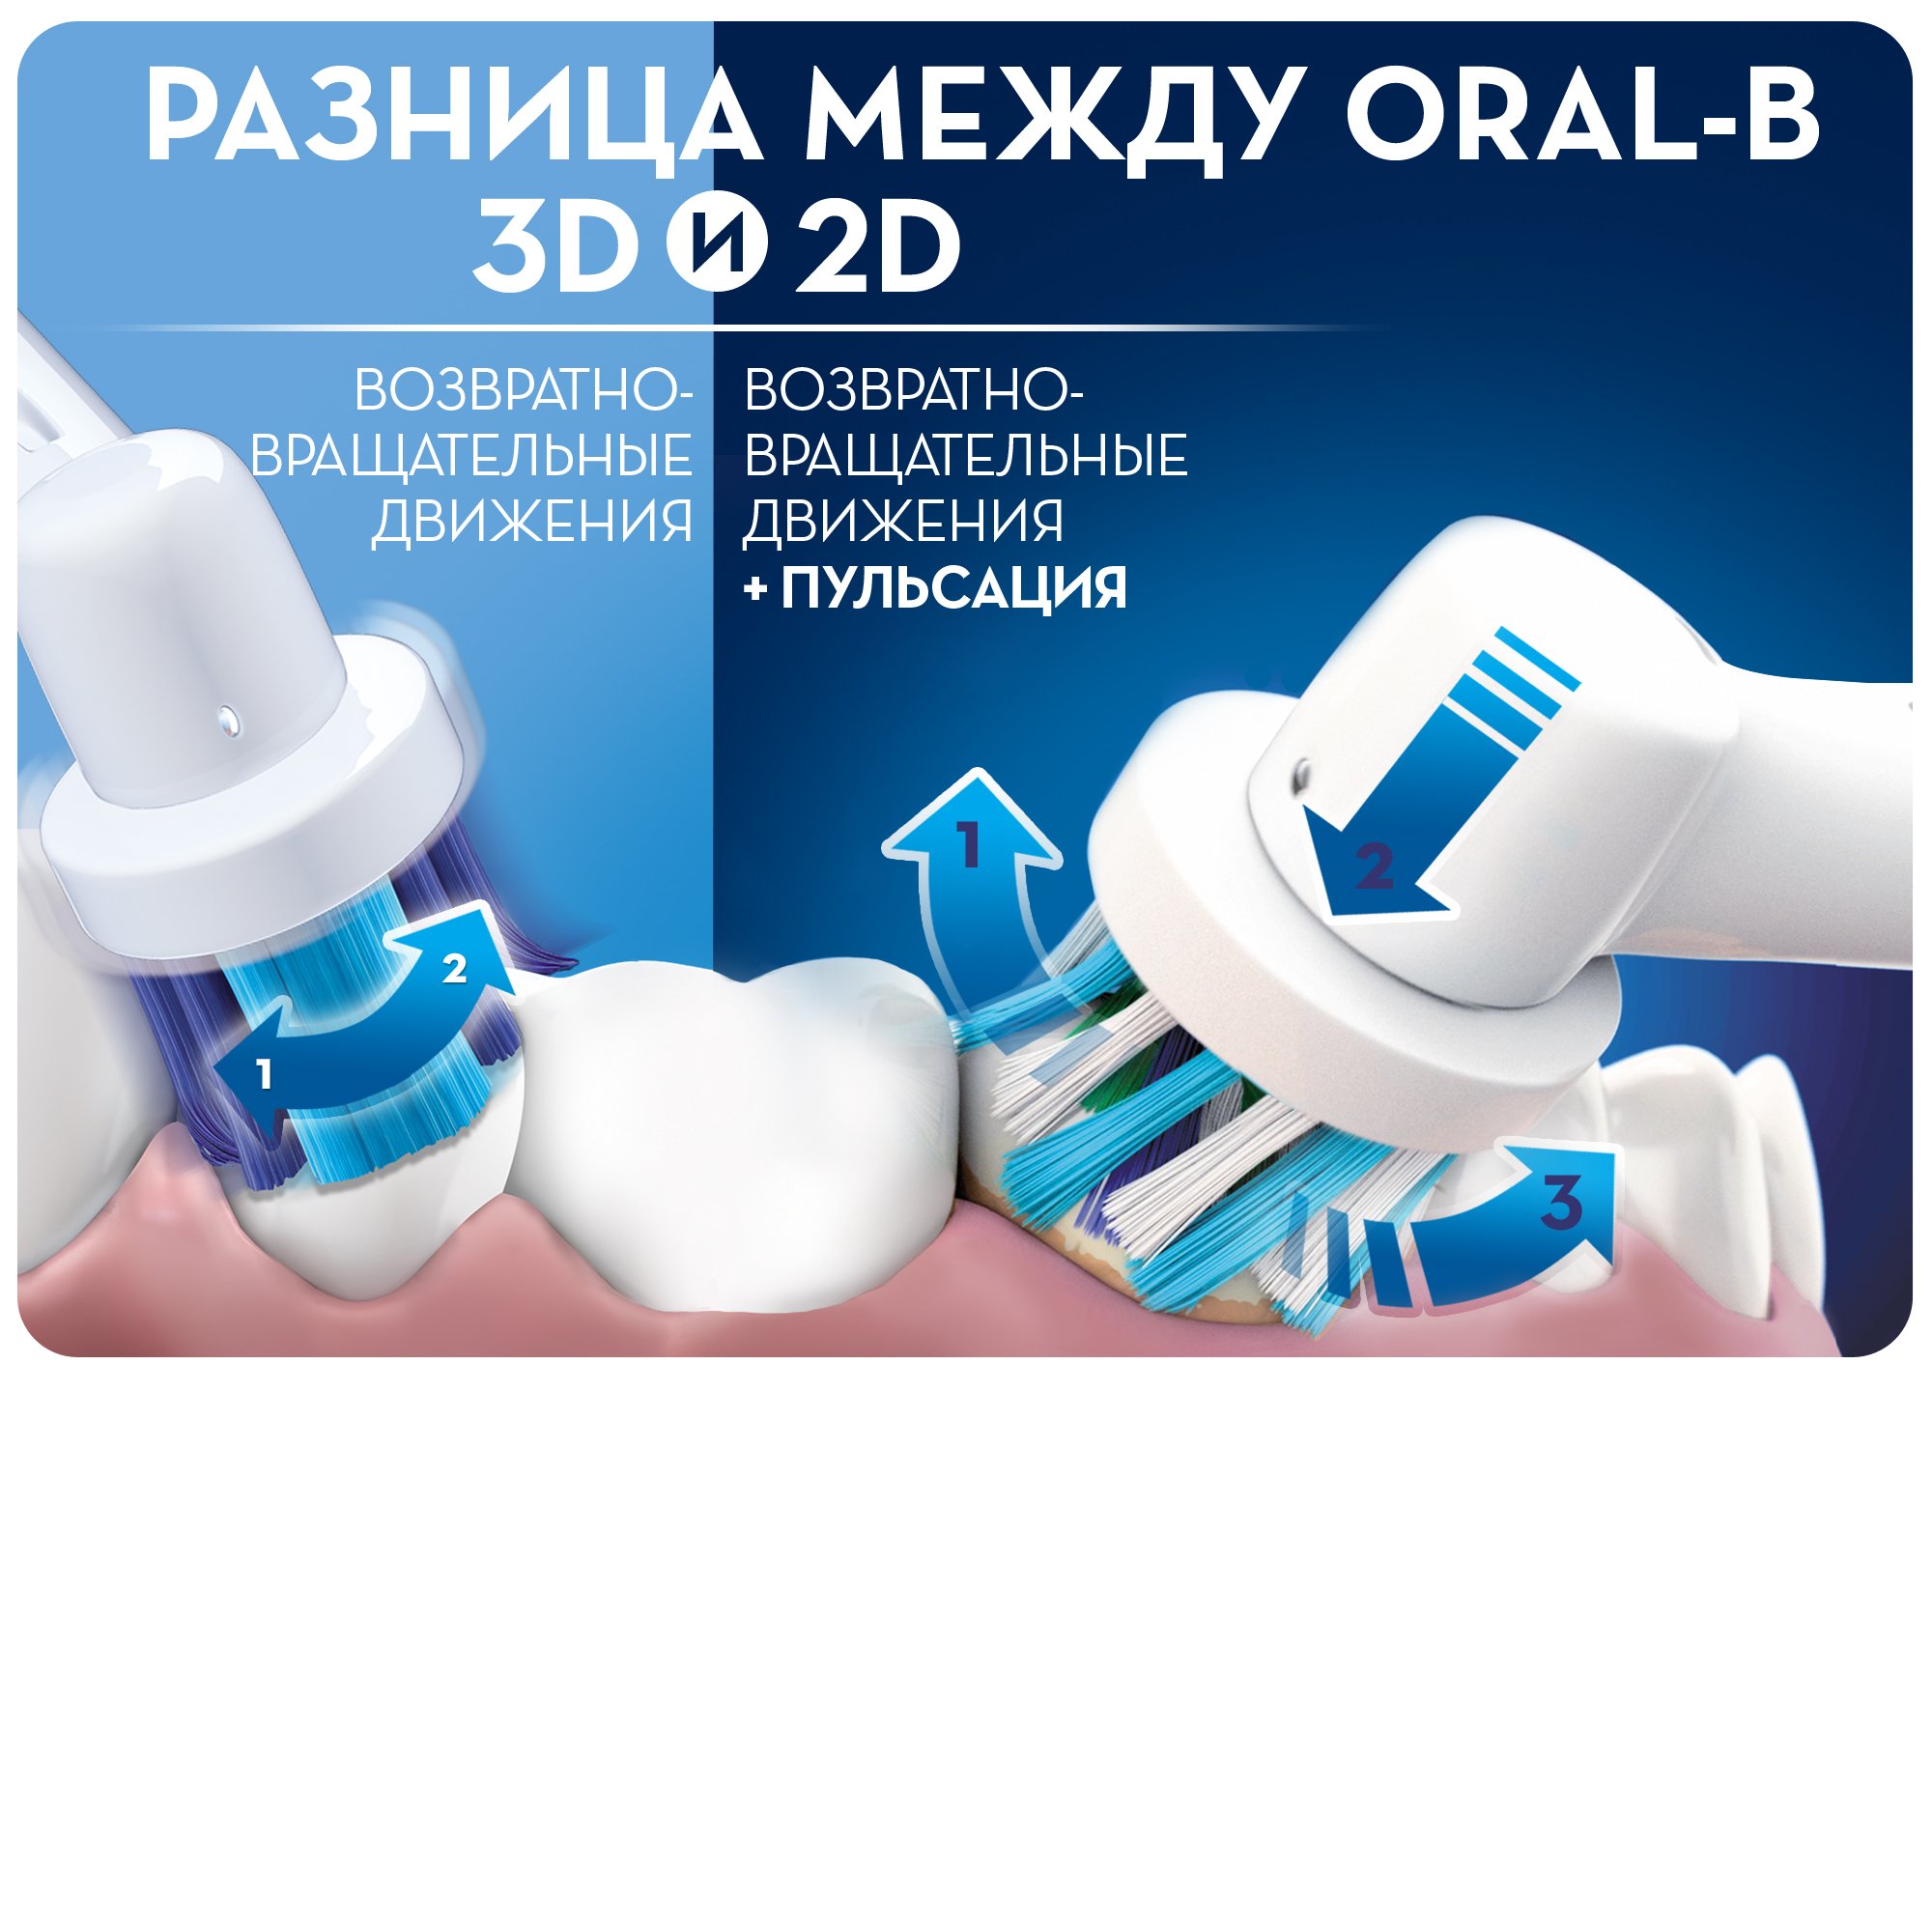 Электрическая зубная щетка Oral-b Vitality Cross Action - фото 6